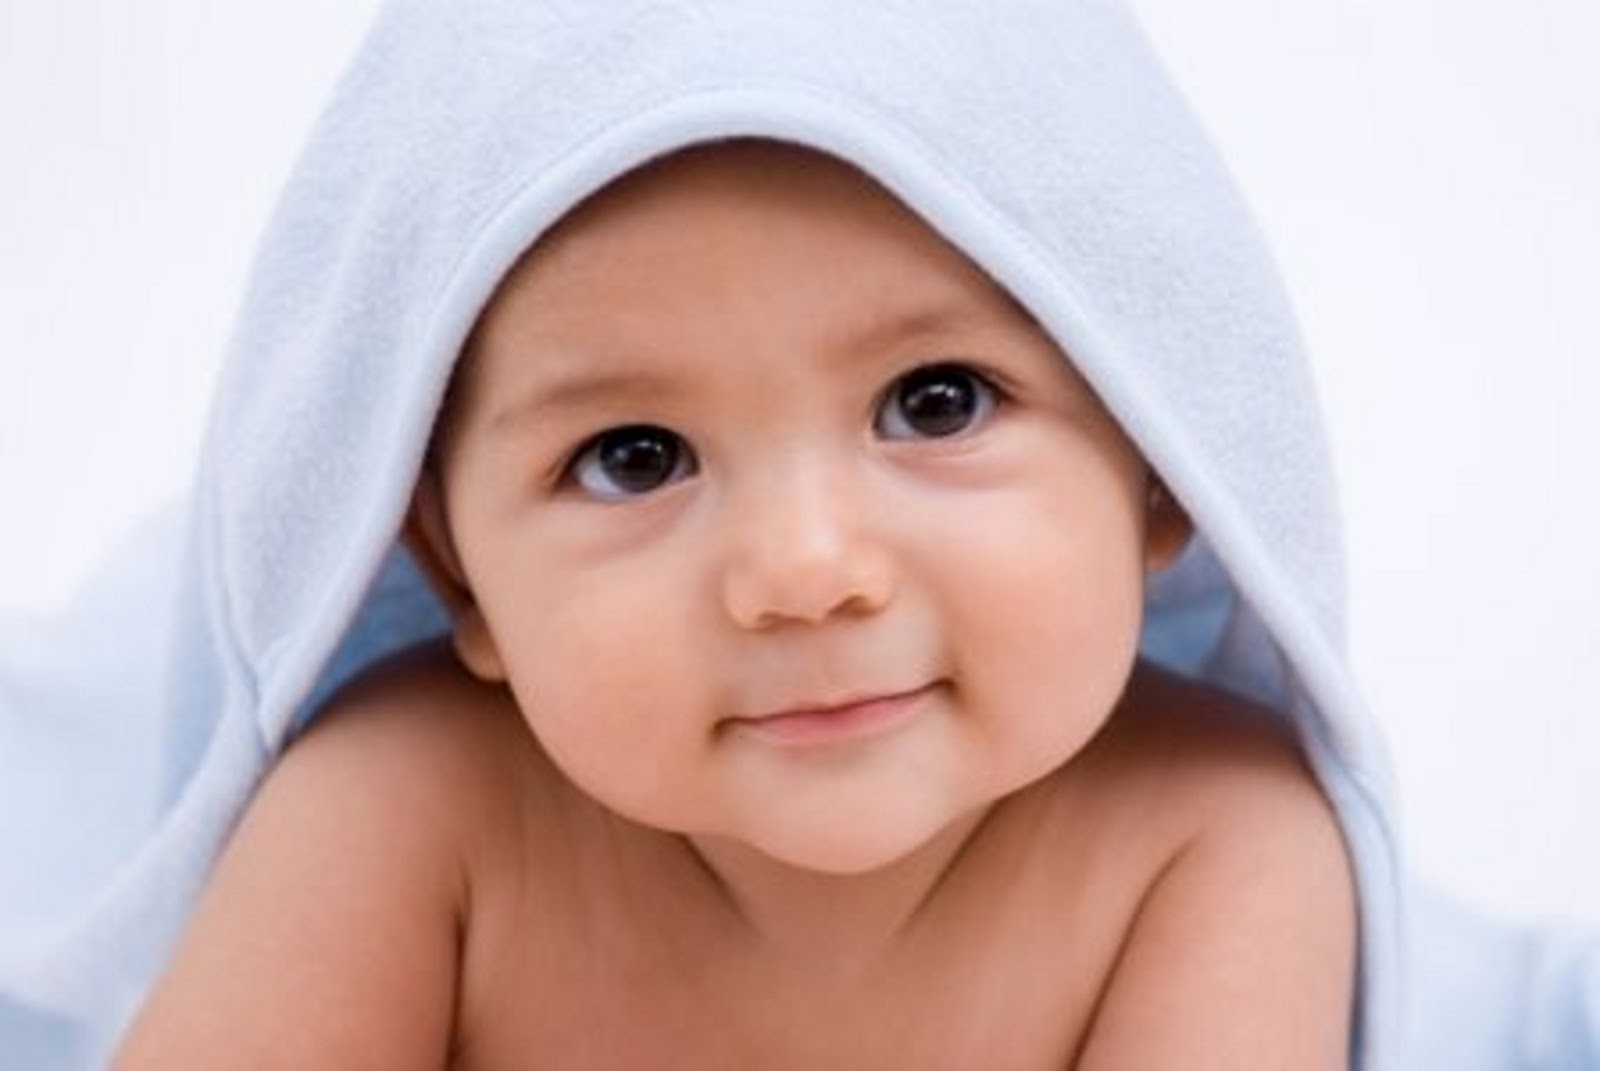 Gambar Anak Bayi Lucu Com Terbaru Display Picture Update